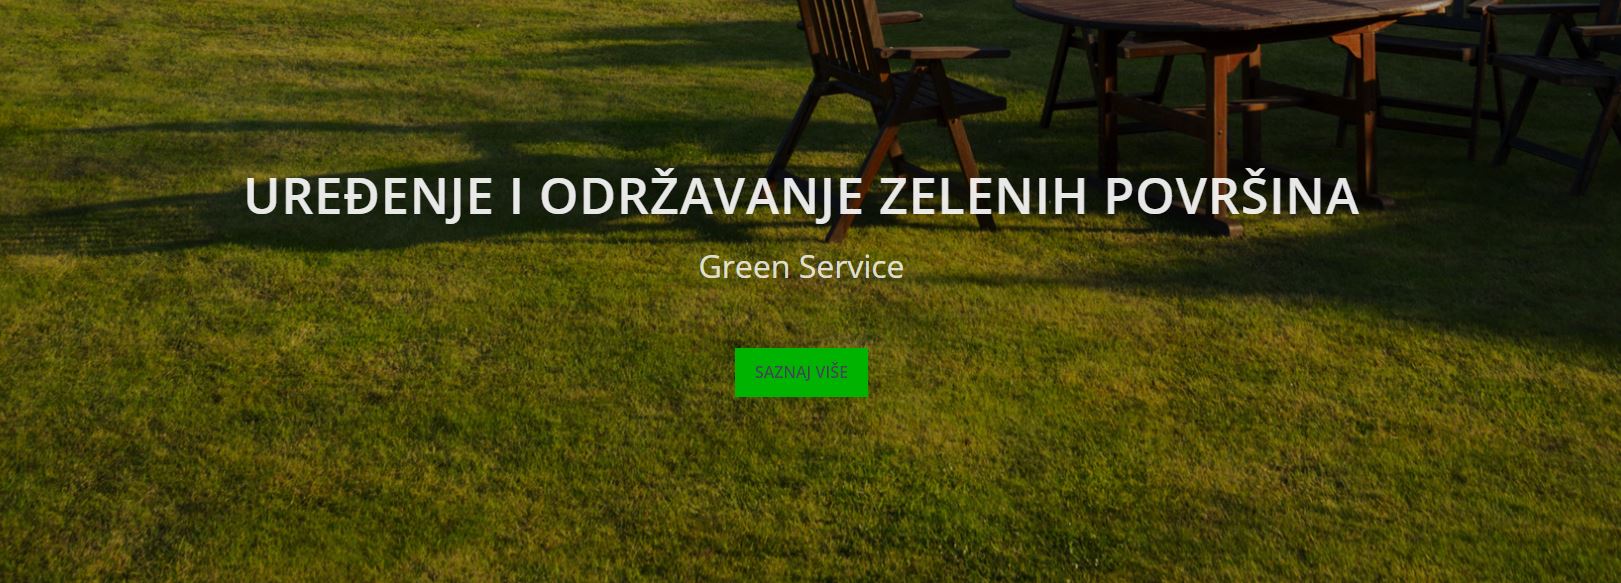 Uredjenje i održavanje zelenih površina Green Service Pančevo